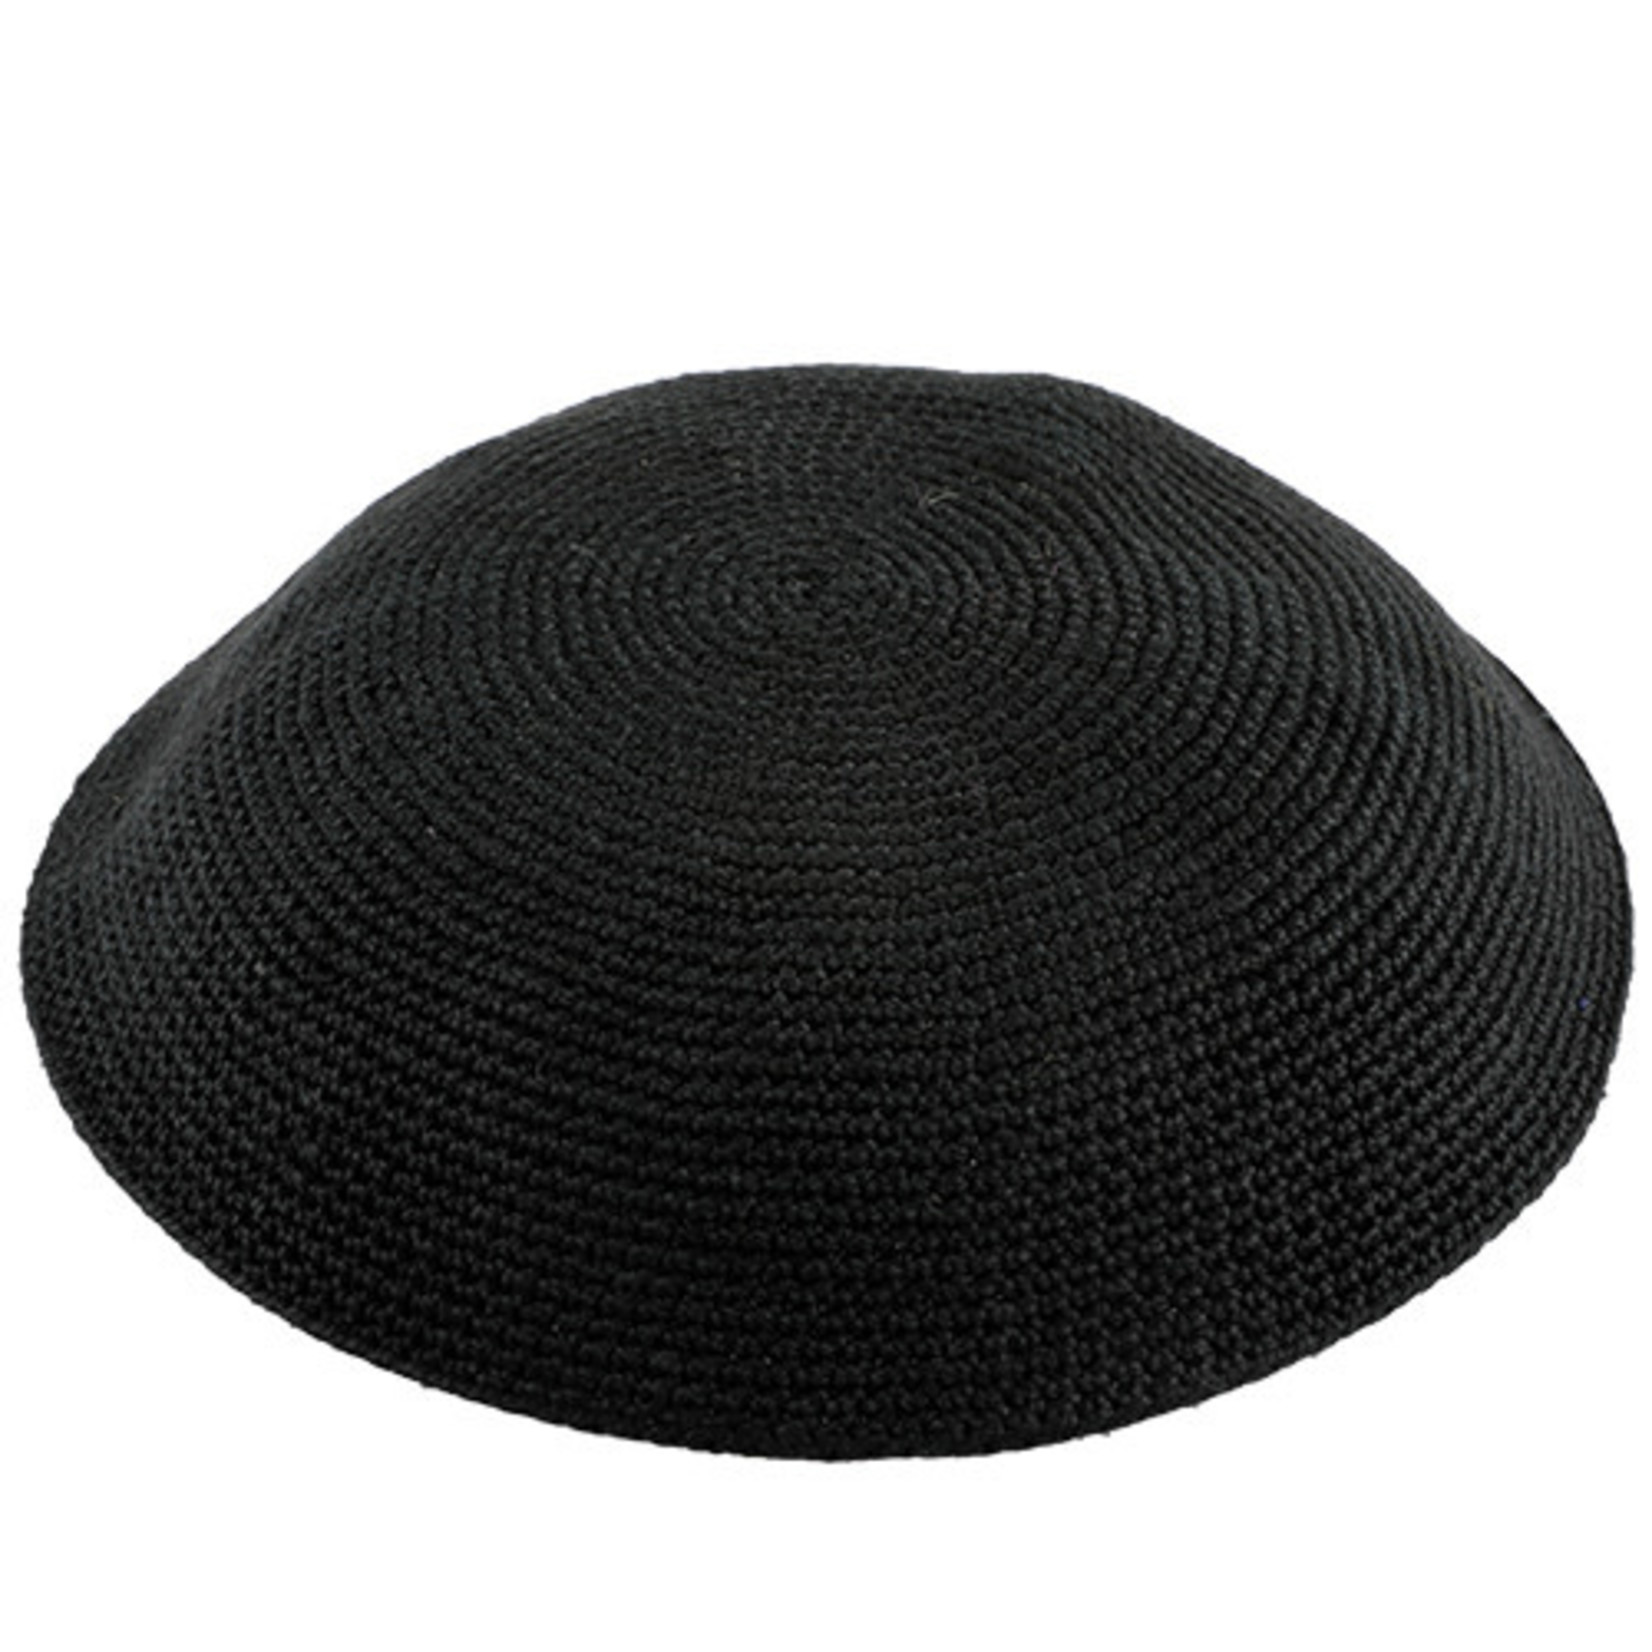 DMC Knit Kippah, Black, 20cm